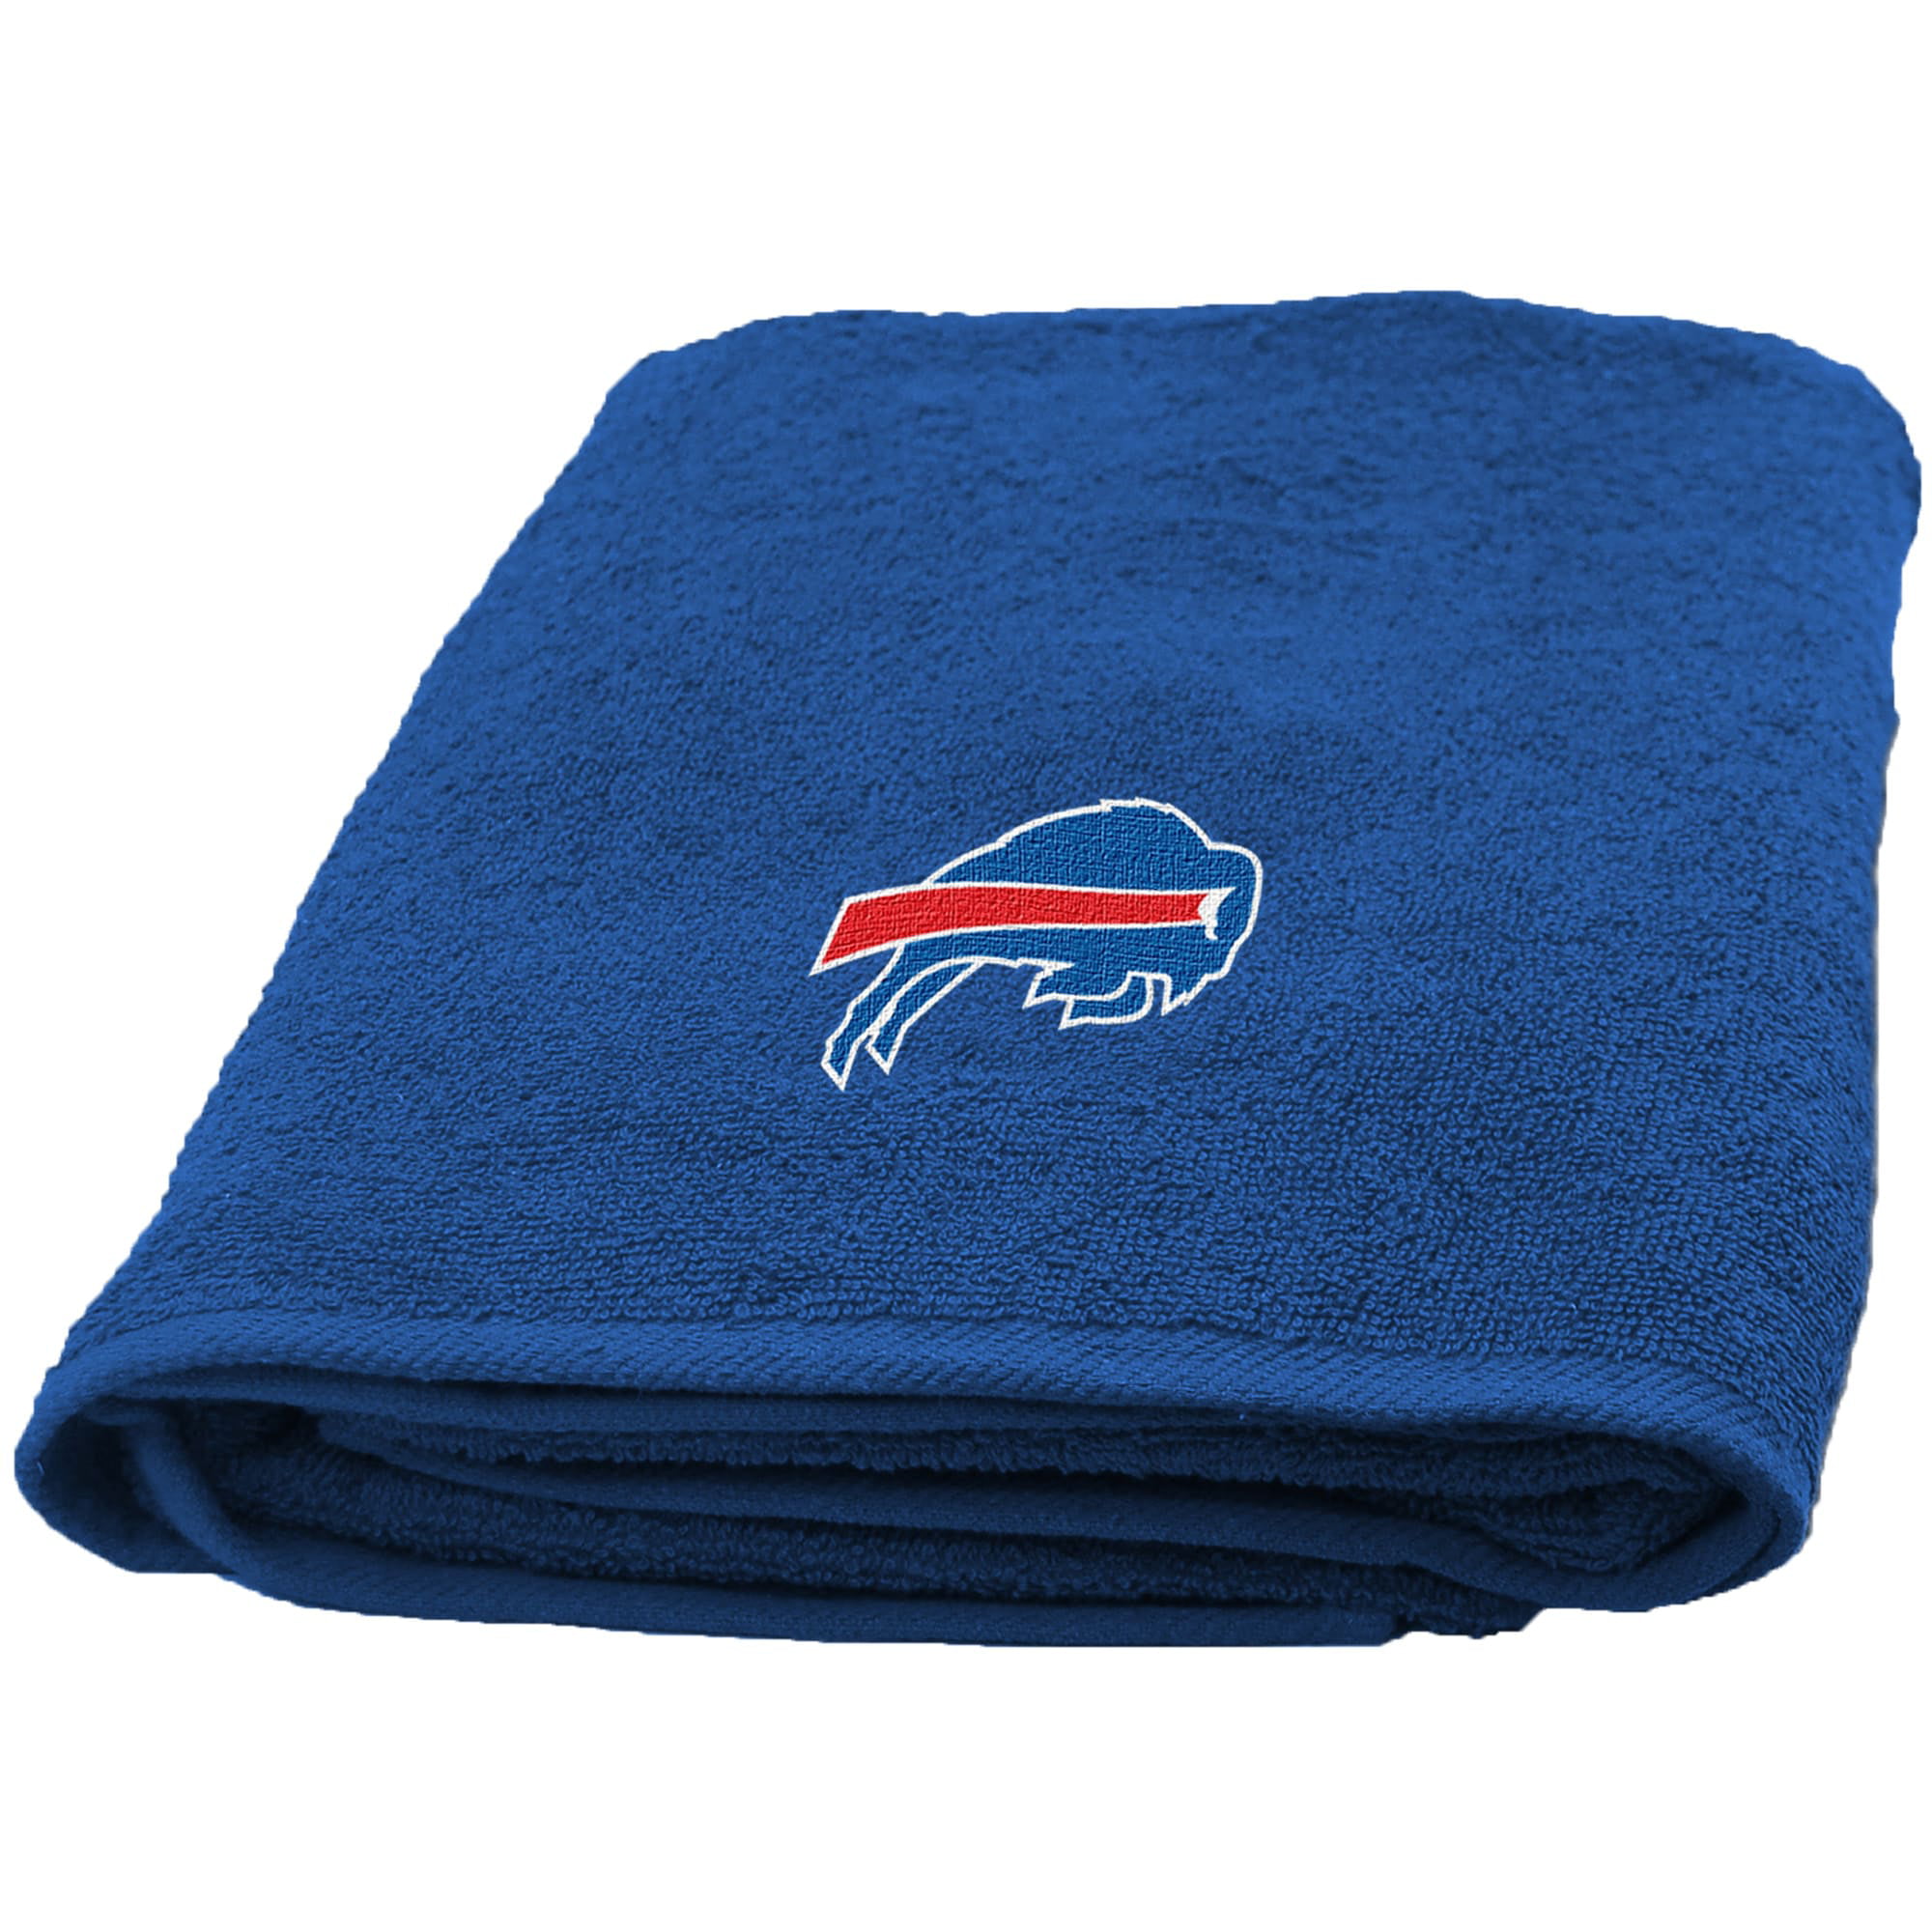 Northwest NFL 929 Applique Beach Buffalo Bills Bath Towel